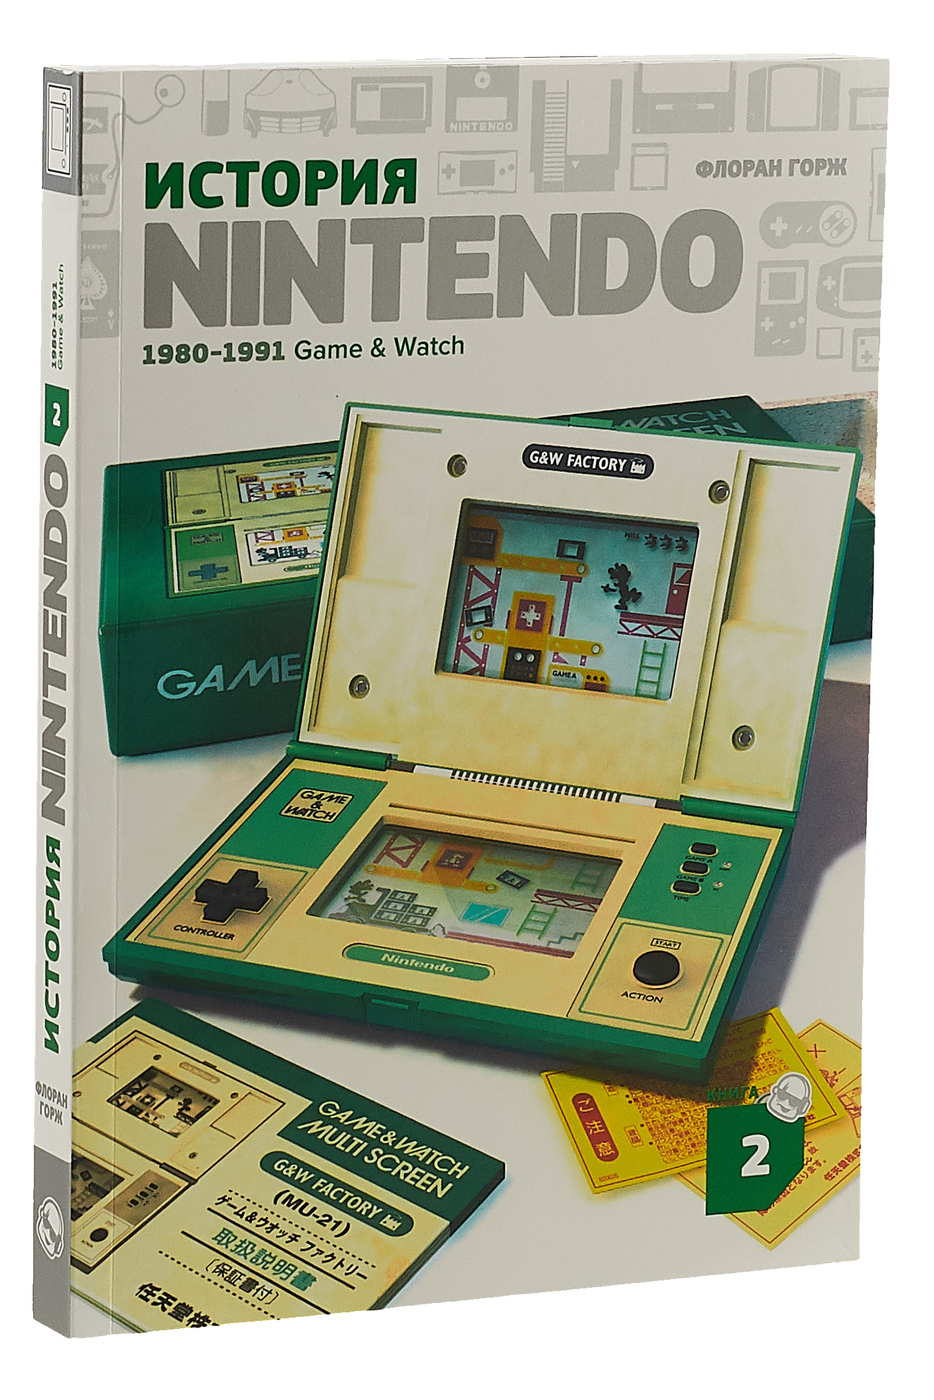 Нинтендо 1980. История Nintendo книга 2 1980-1991 game watch. История Нинтендо. История Nintendo книга.